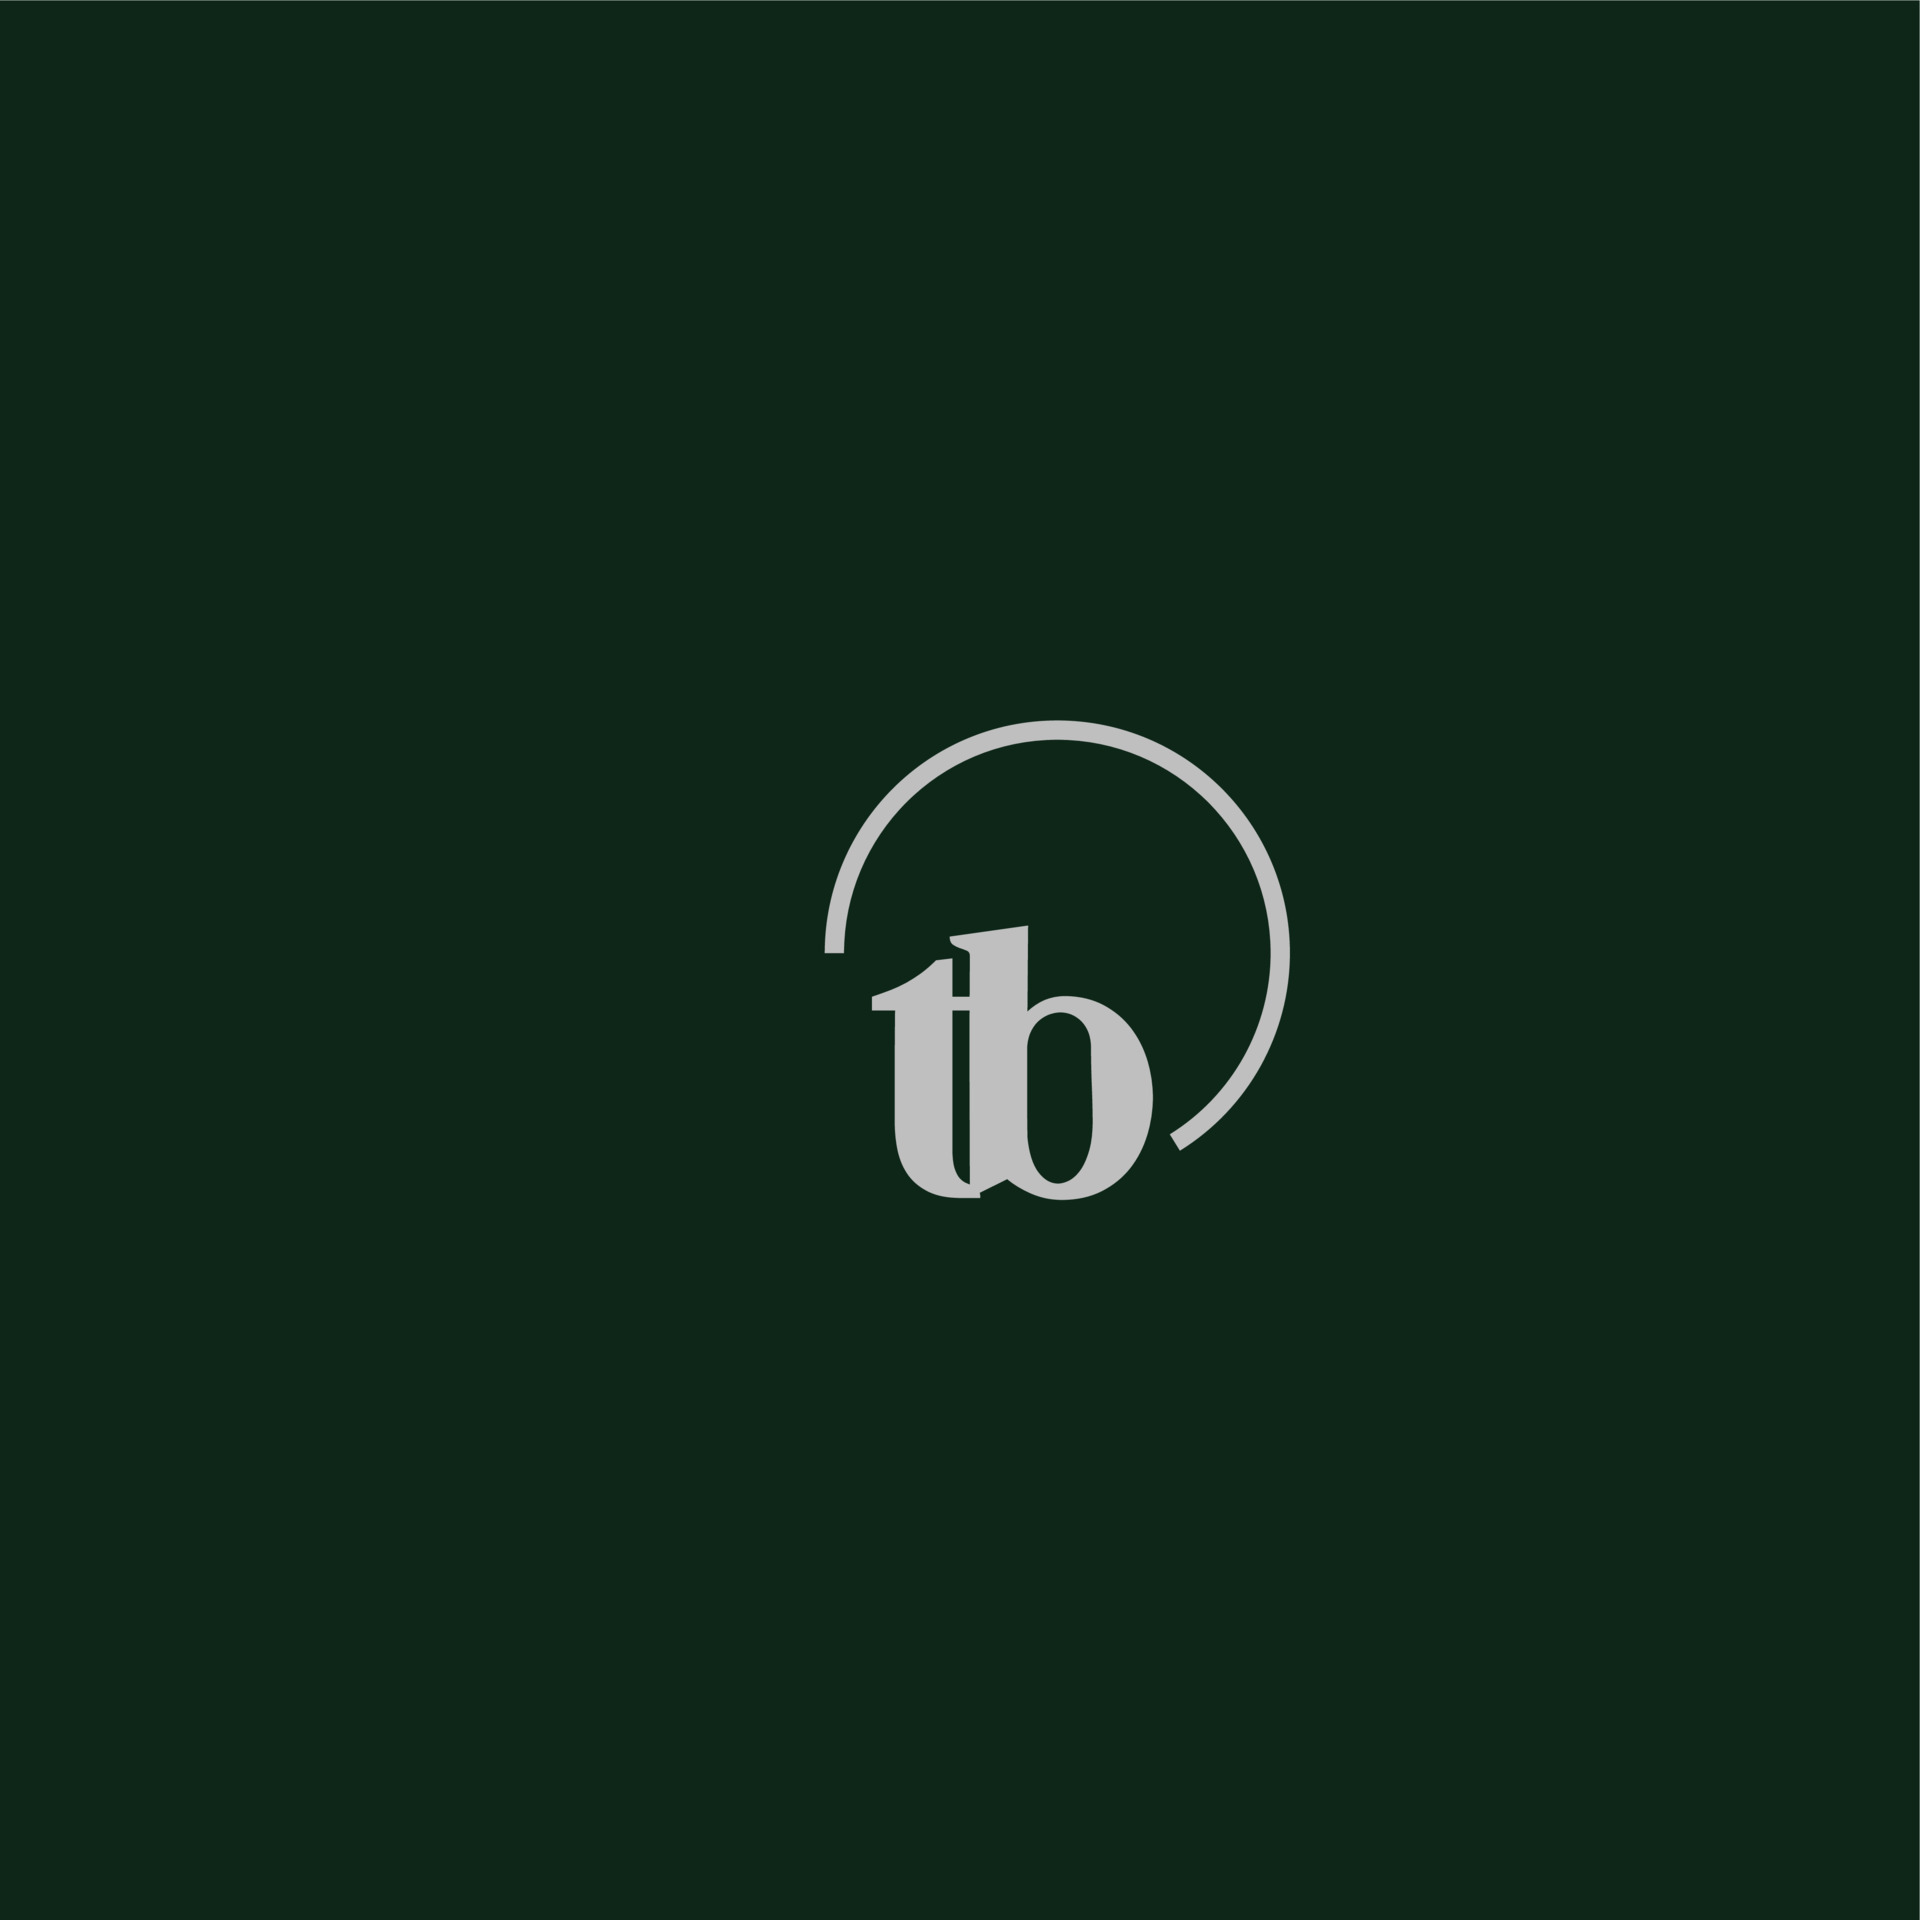 TB initials logo monogram 8257295 Vector Art at Vecteezy